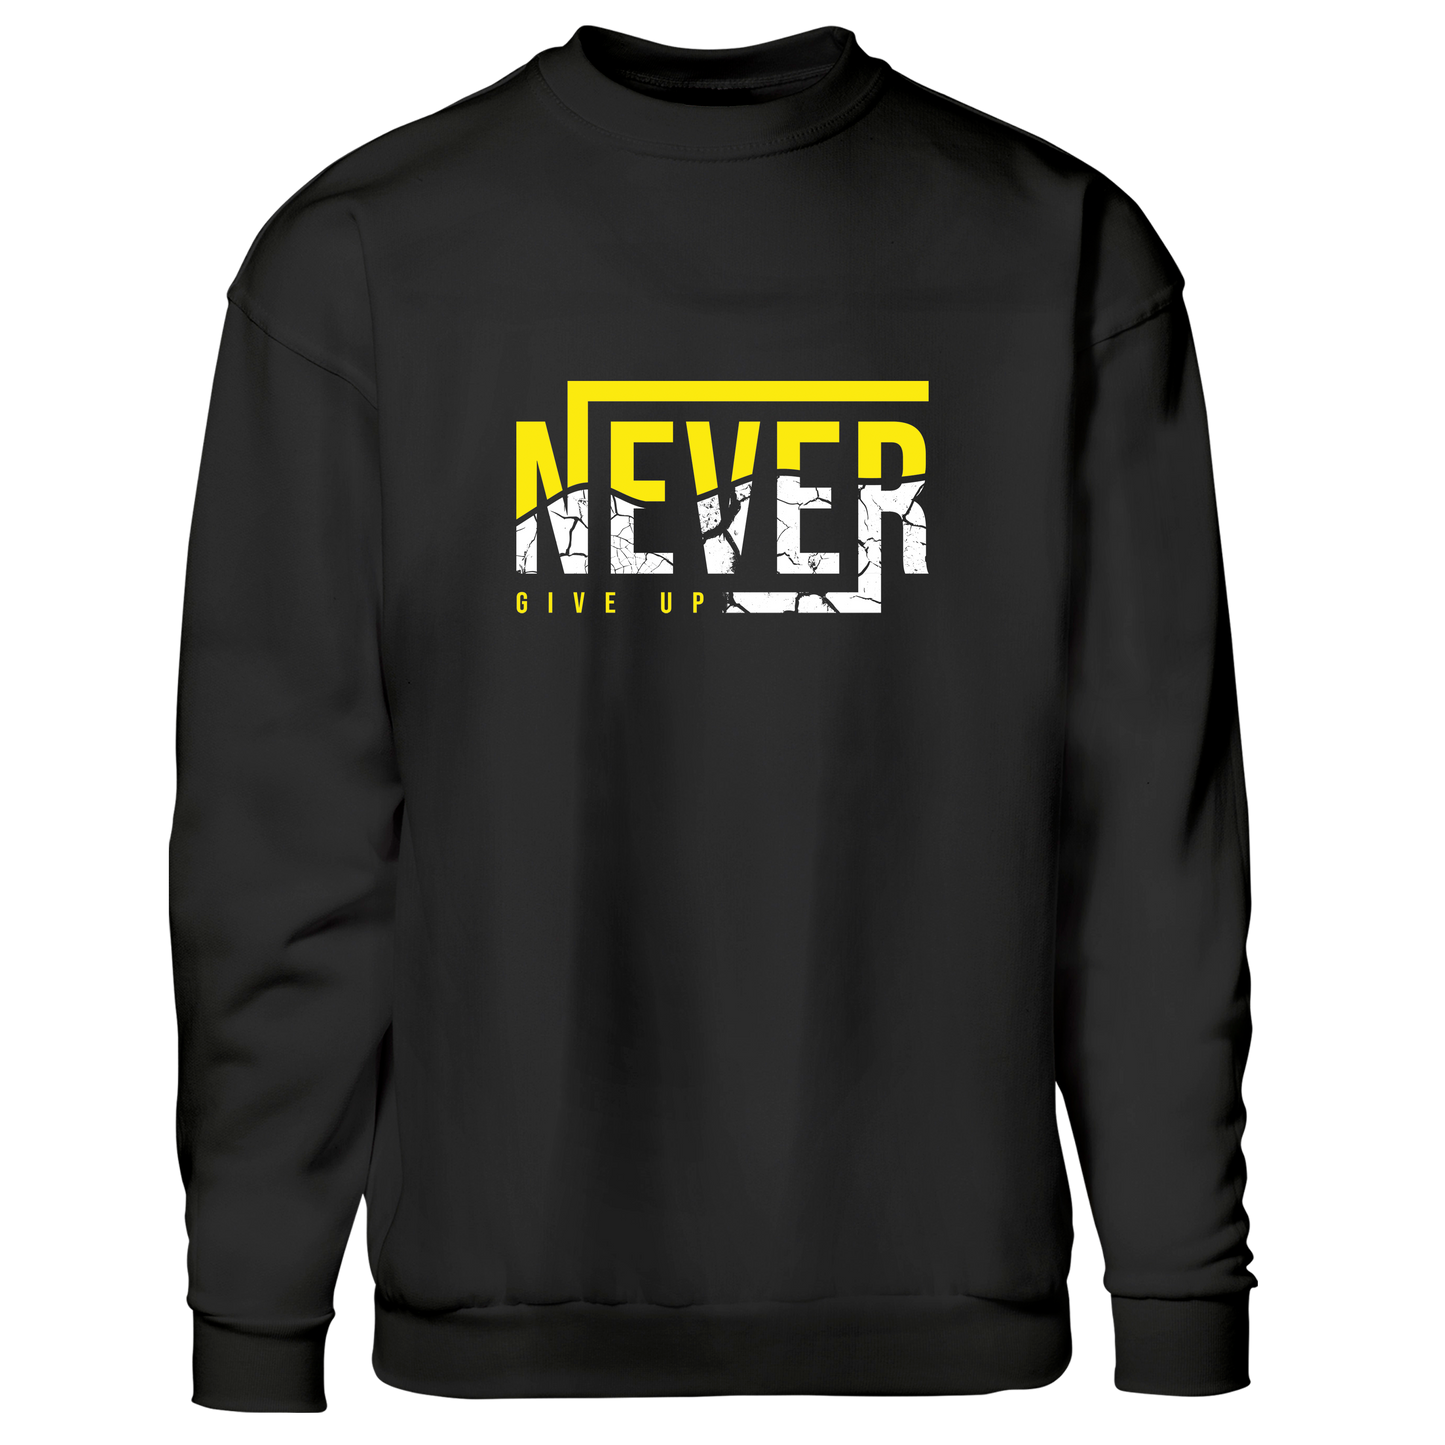 Never give up - sweatshirt